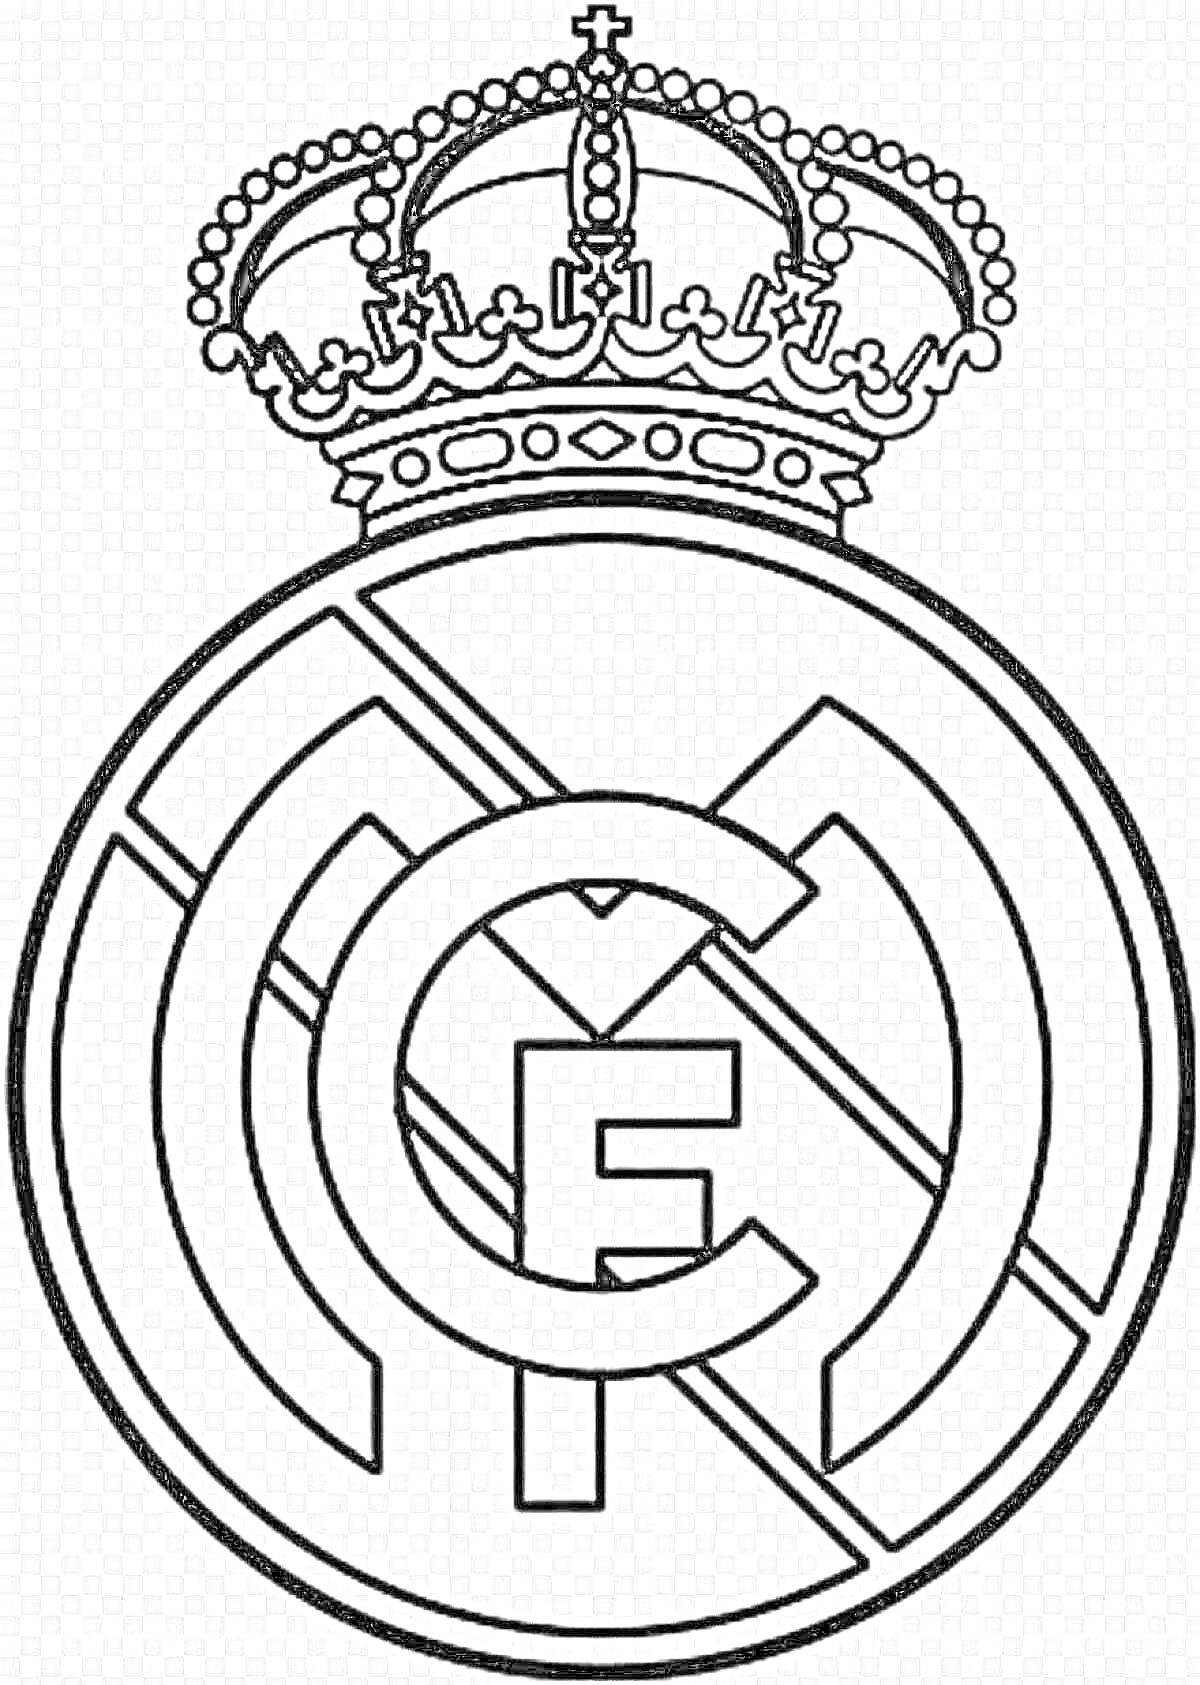 Раскраска Эмблема футбольного клуба Реал Мадрид с короной, монохромная